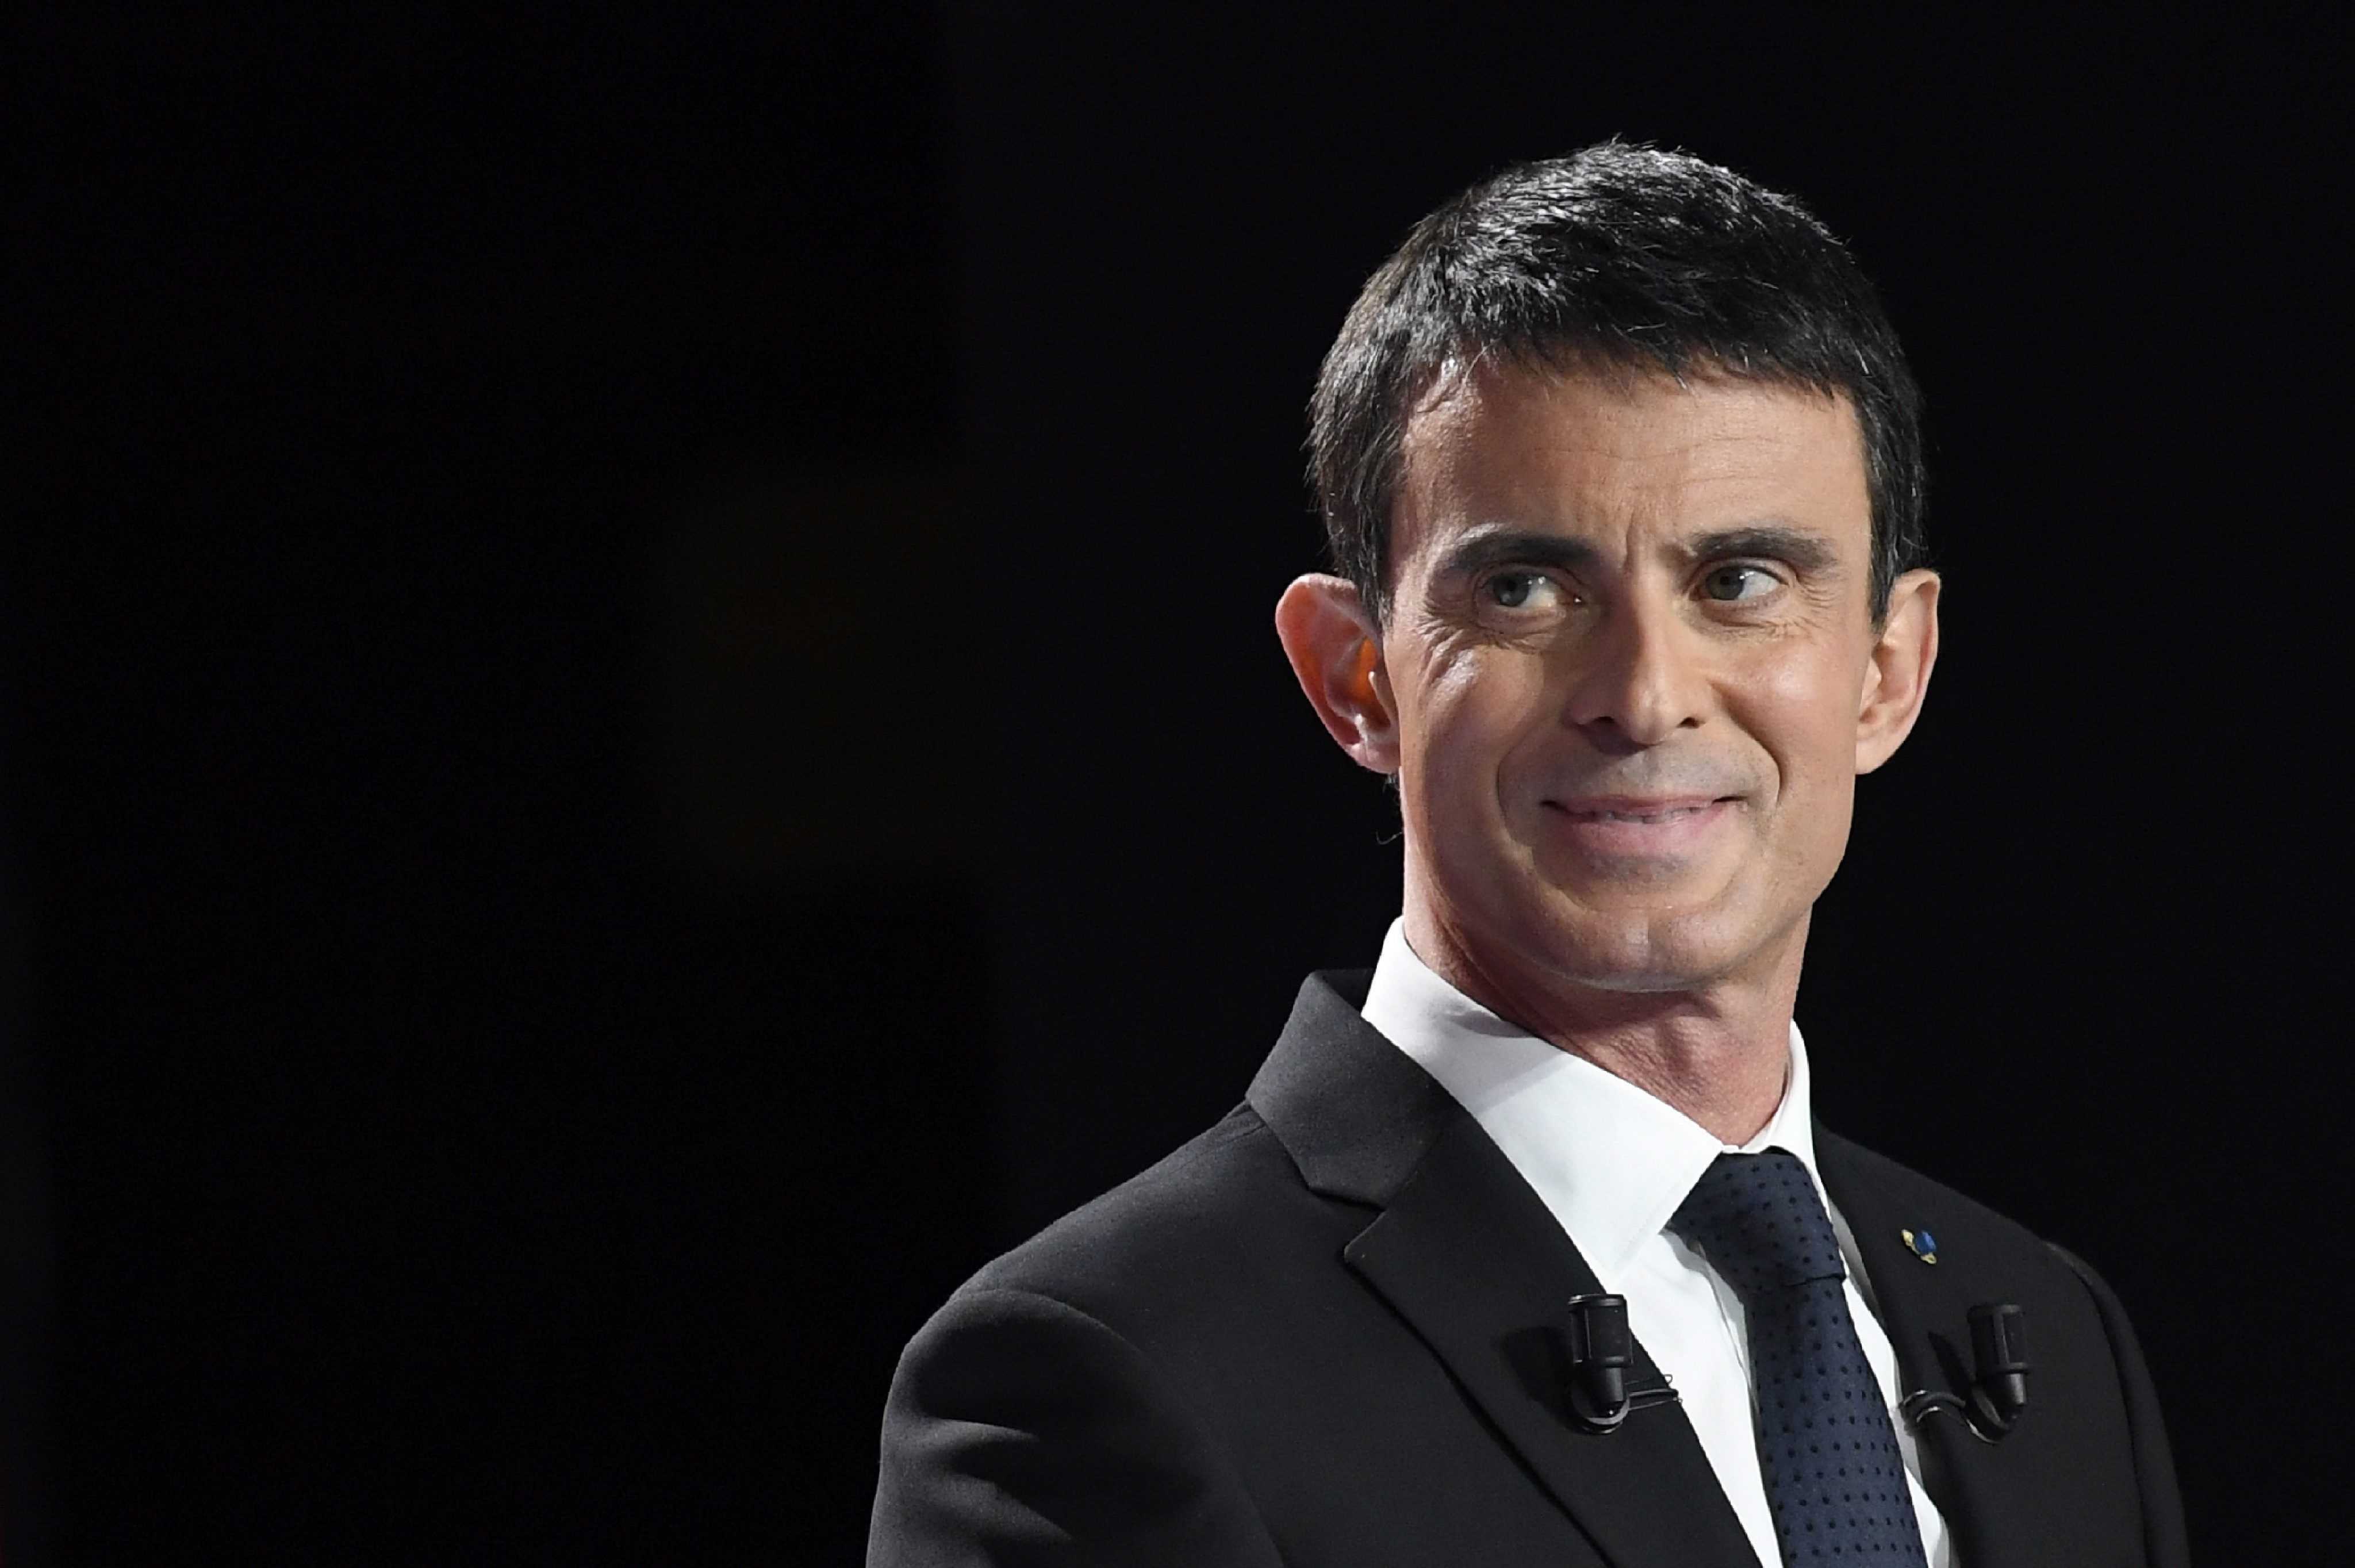 VÍDEO: Manuel Valls recibe una bofetada a la salida de un acto